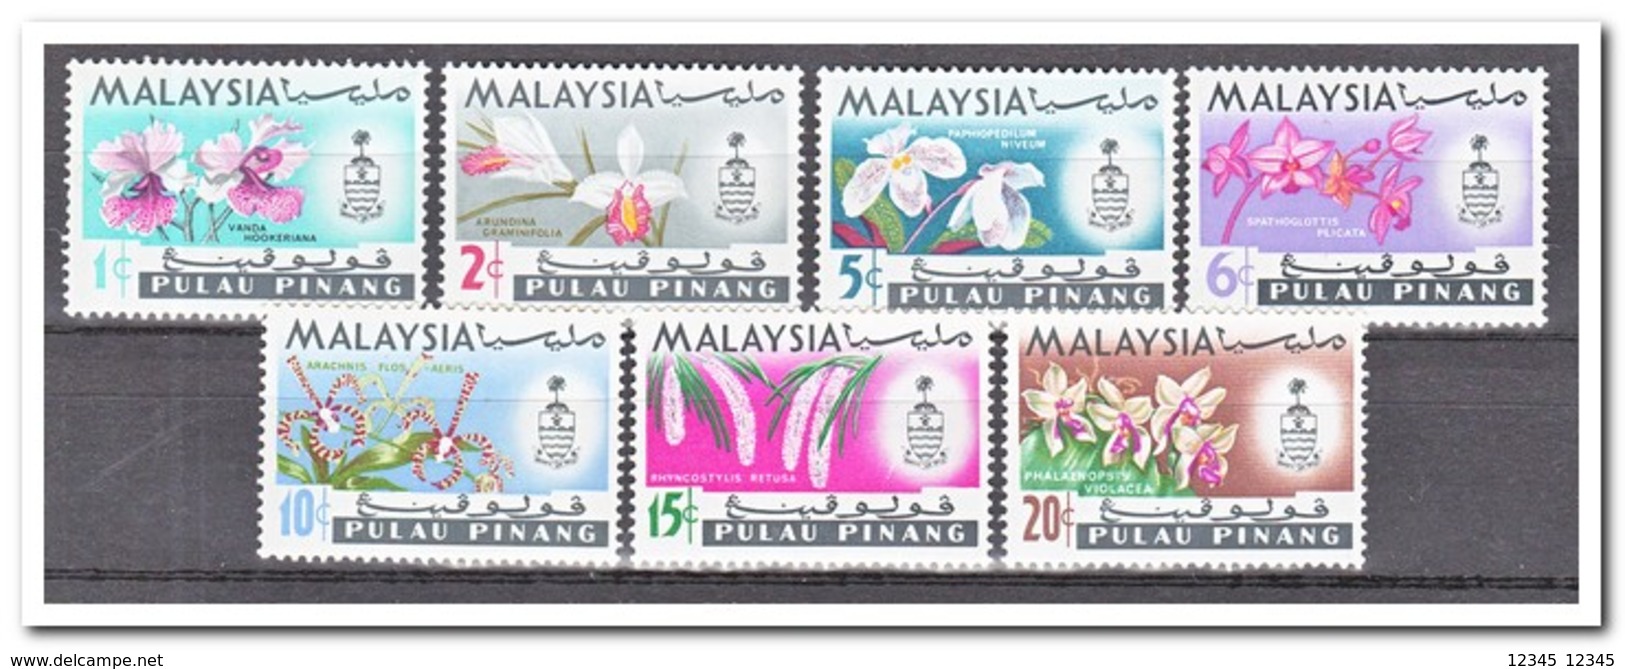 Maleisië Pulau Pinang 1965, Postfris MNH, Flowers, Orchids - Maleisië (1964-...)